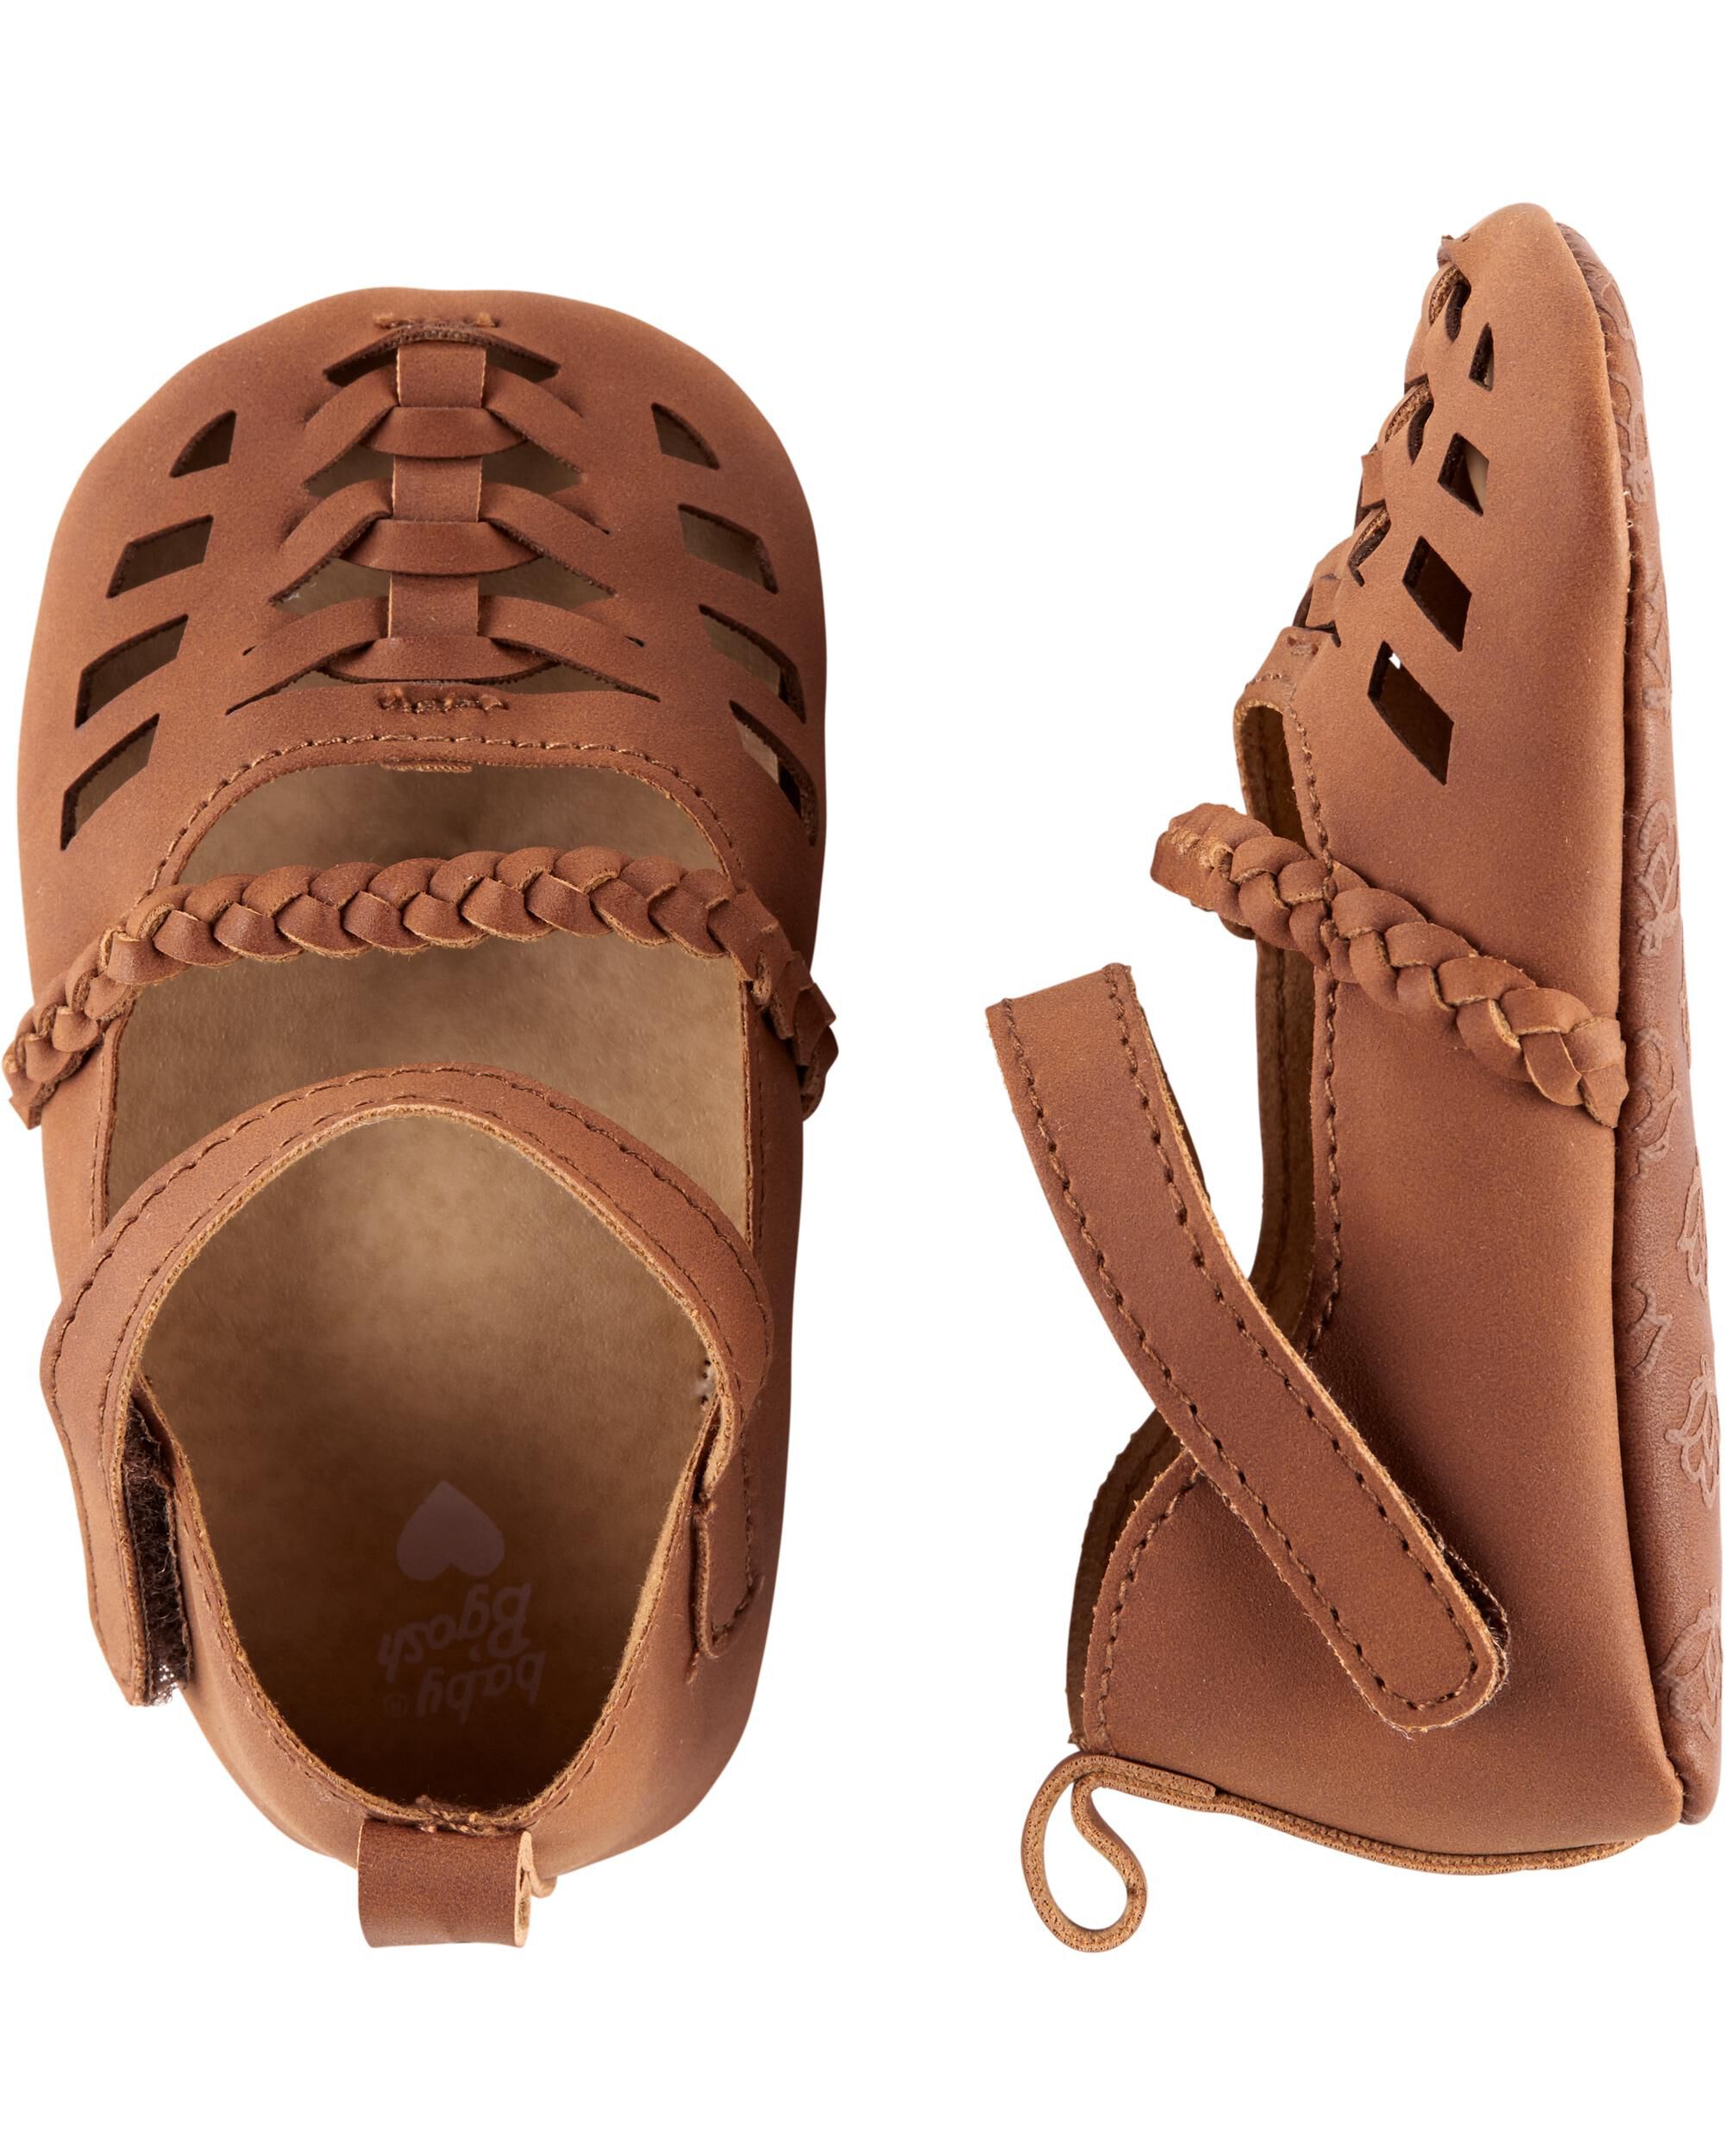 OshKosh Sandal Baby Shoes | oshkosh.com